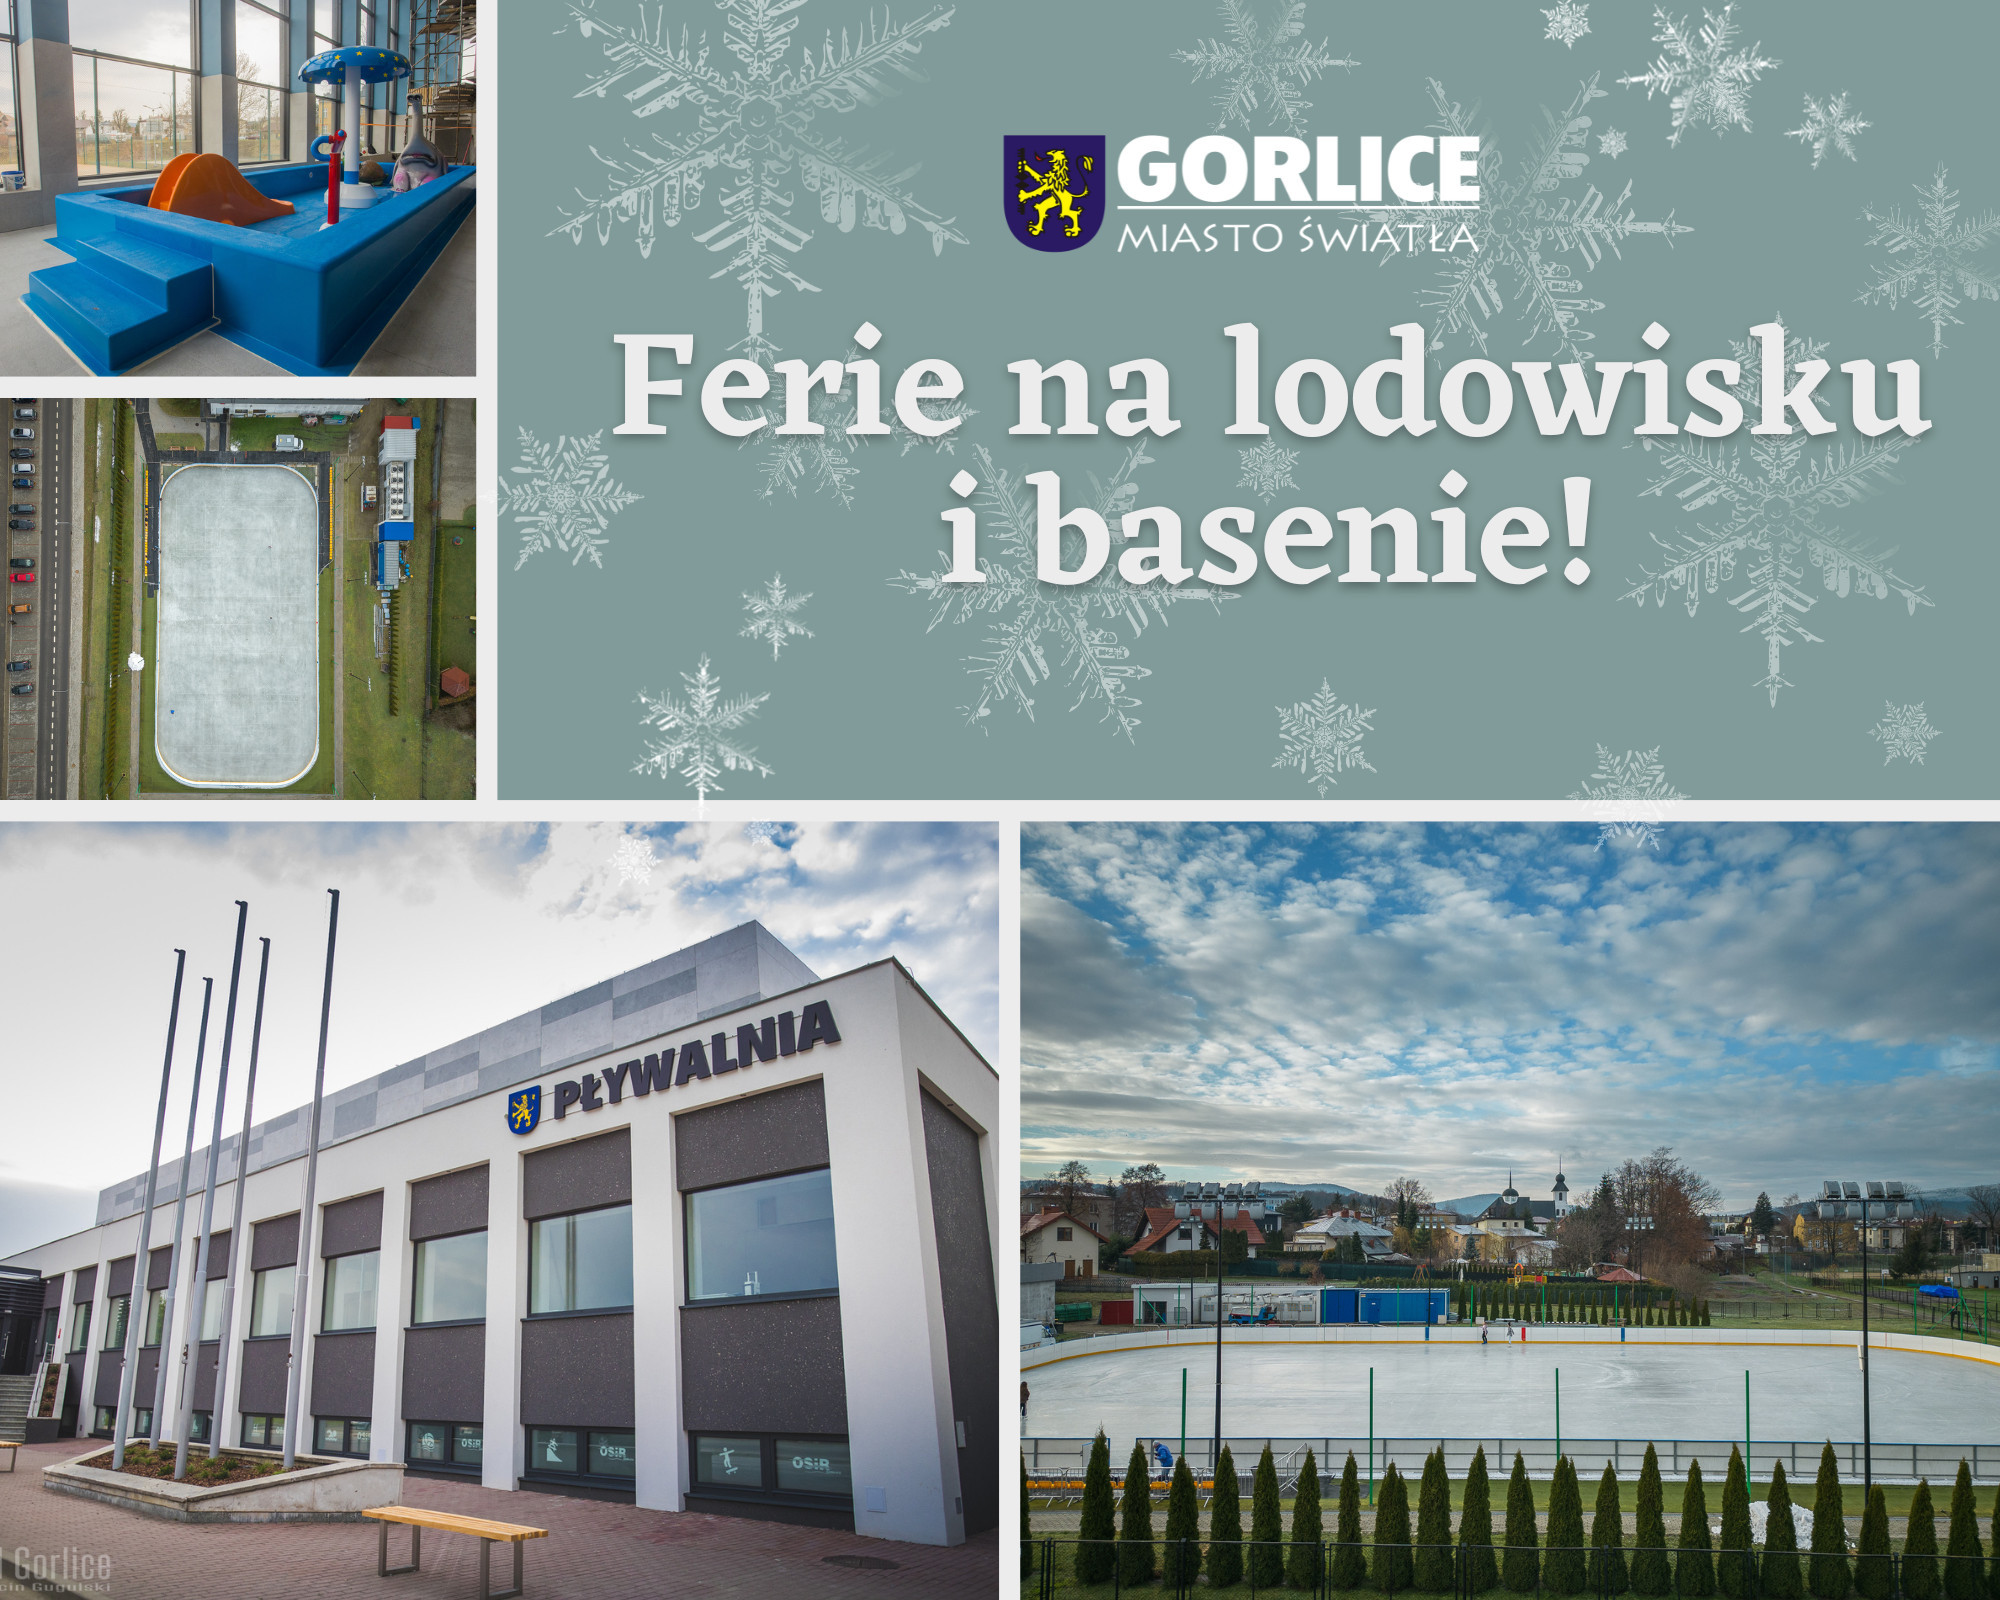 Zniżka na pływalnię i lodowisko dla wszystkich dzieci zamieszkałych na terenie Gorlic!